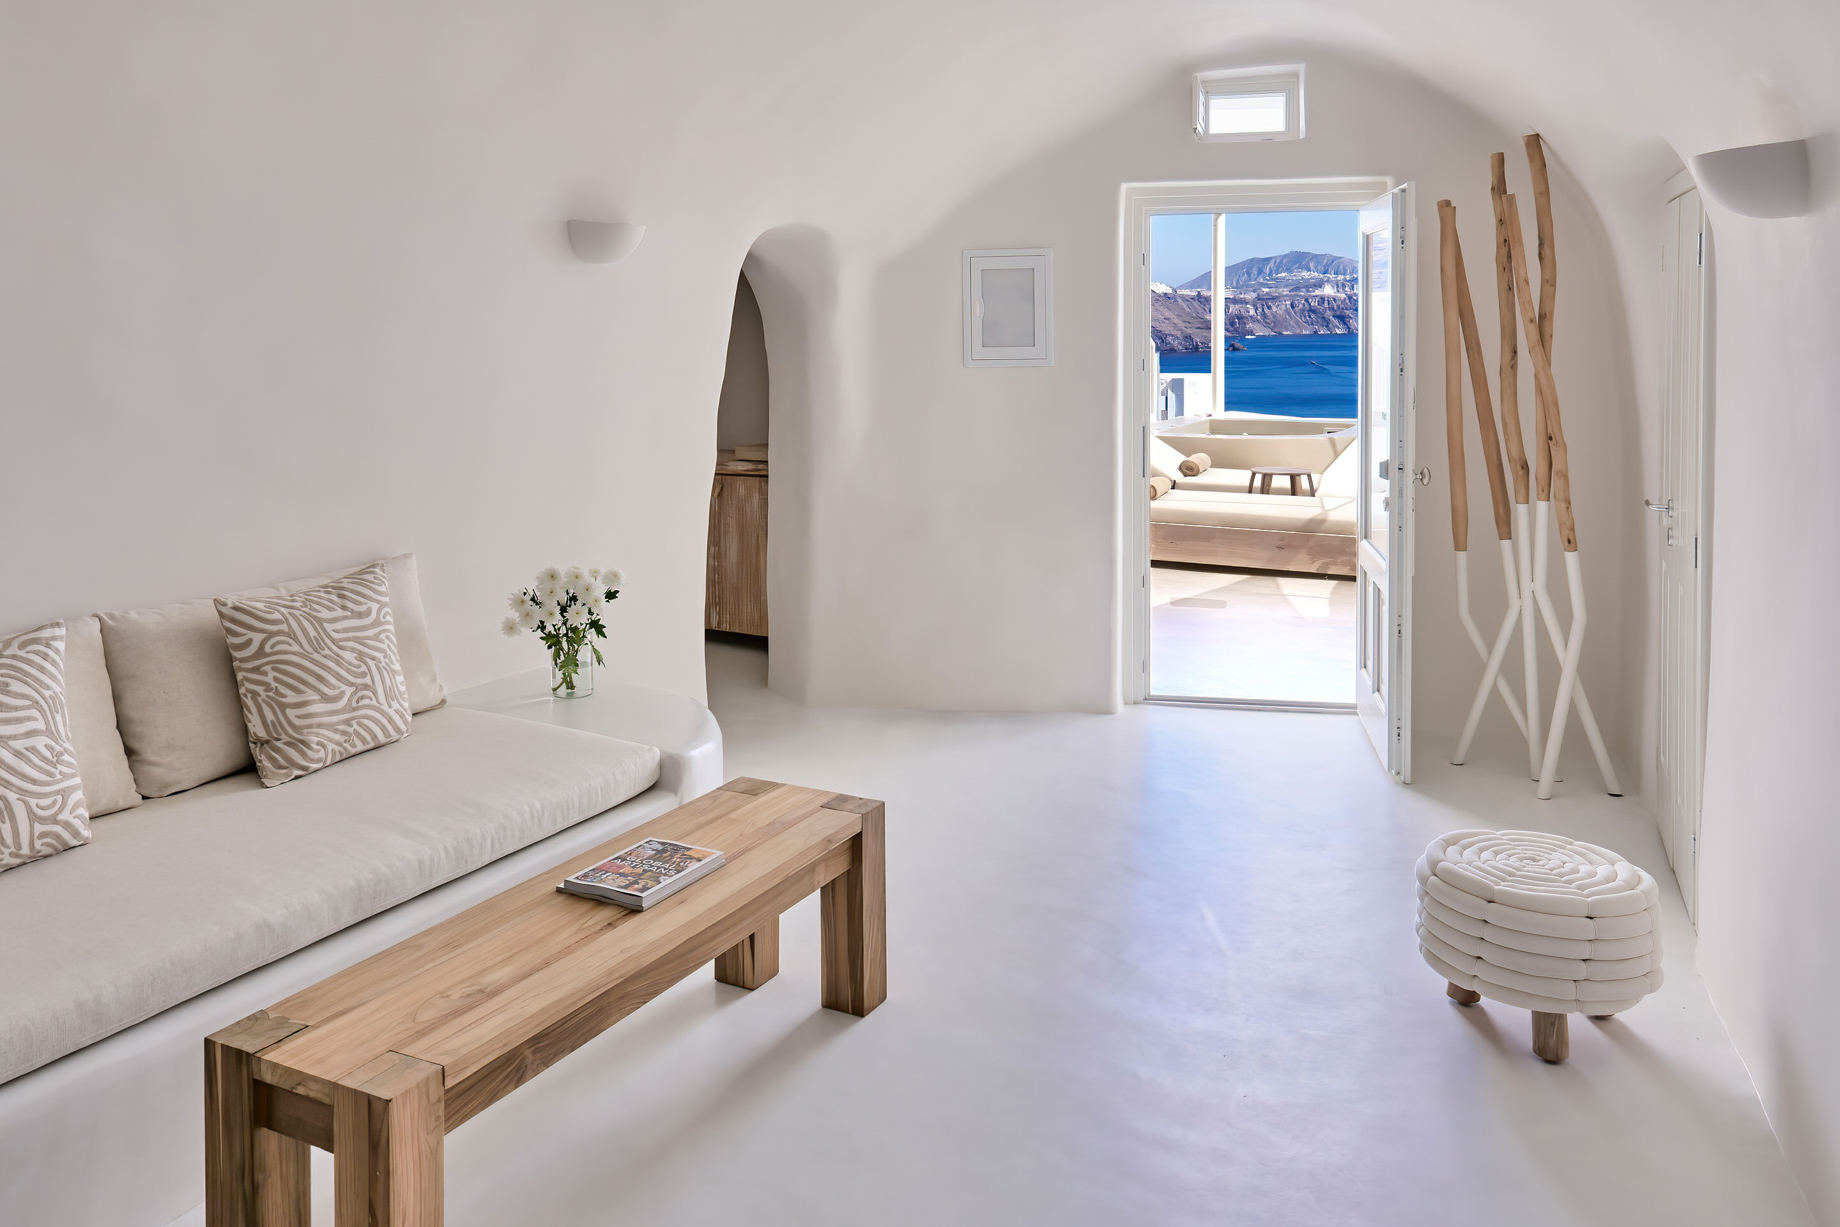 Mystique Hotel Santorini – Oia, Santorini Island, Greece - Wet Allure Suite